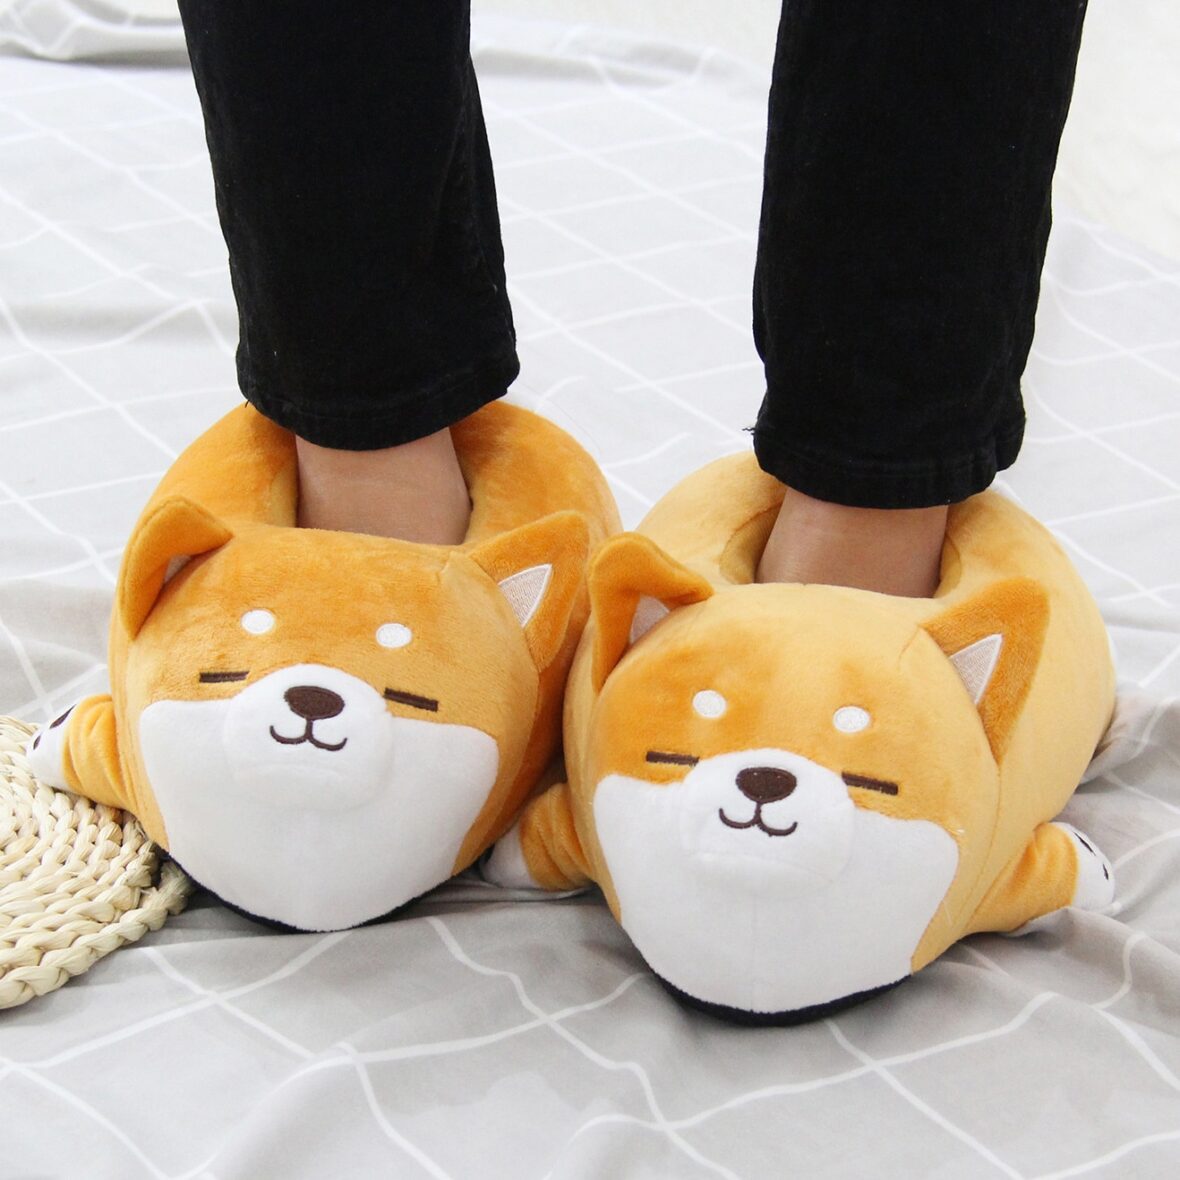 Shiba Inu Dog Soft Stuffed Plush Slippers